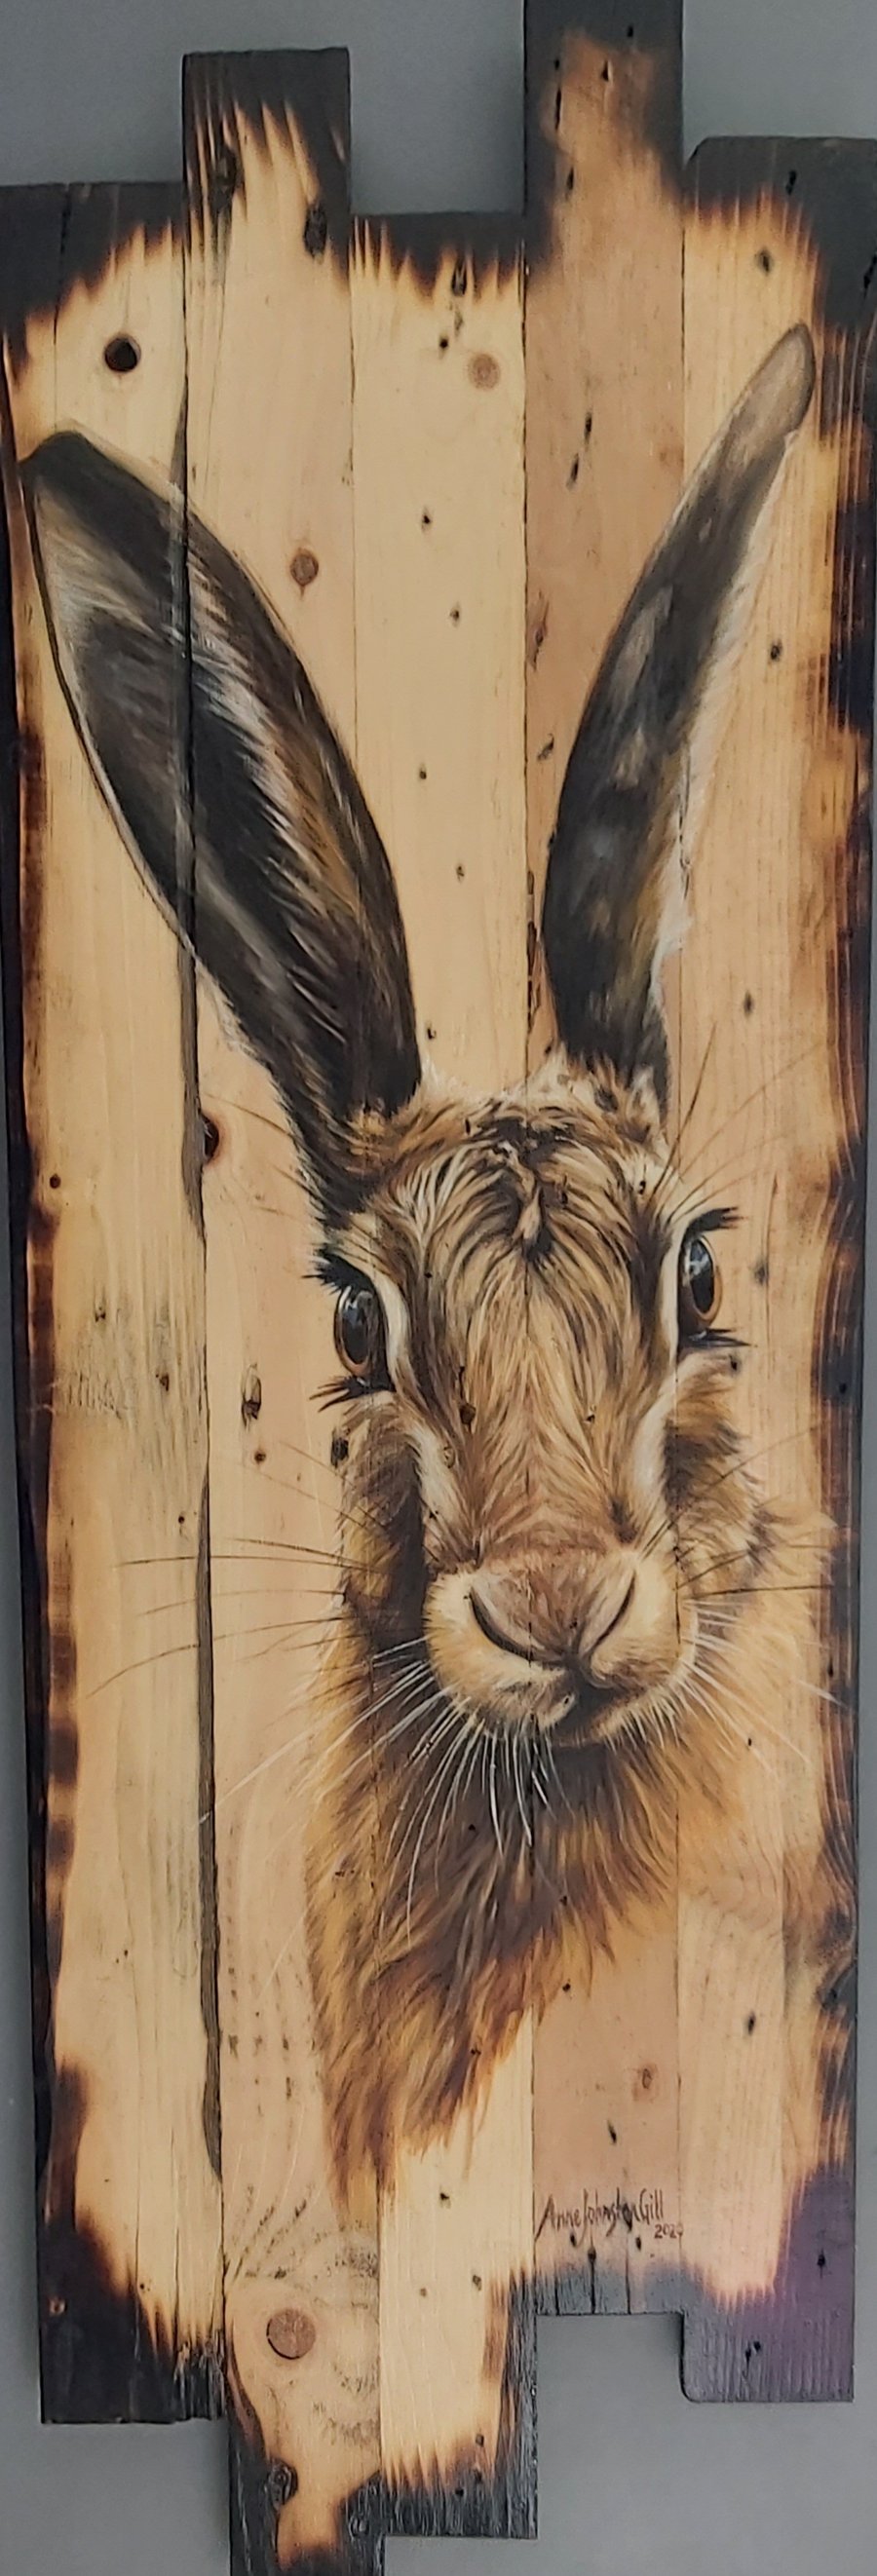 Hare painting on wood, Original art, oil on reclaimed wood